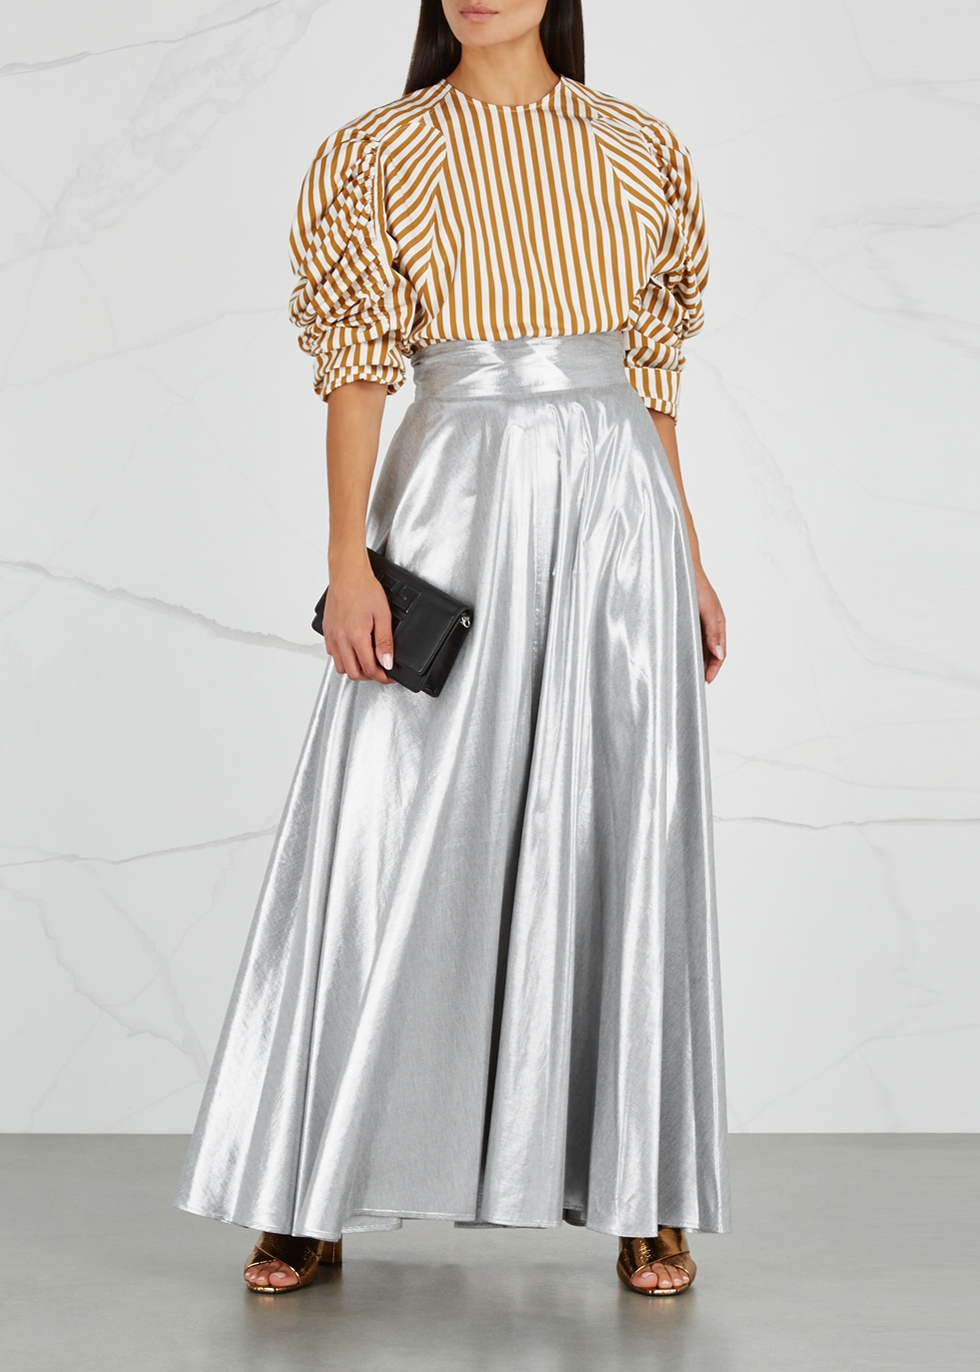 Silver twill maxi skirt - Diane von Furstenberg